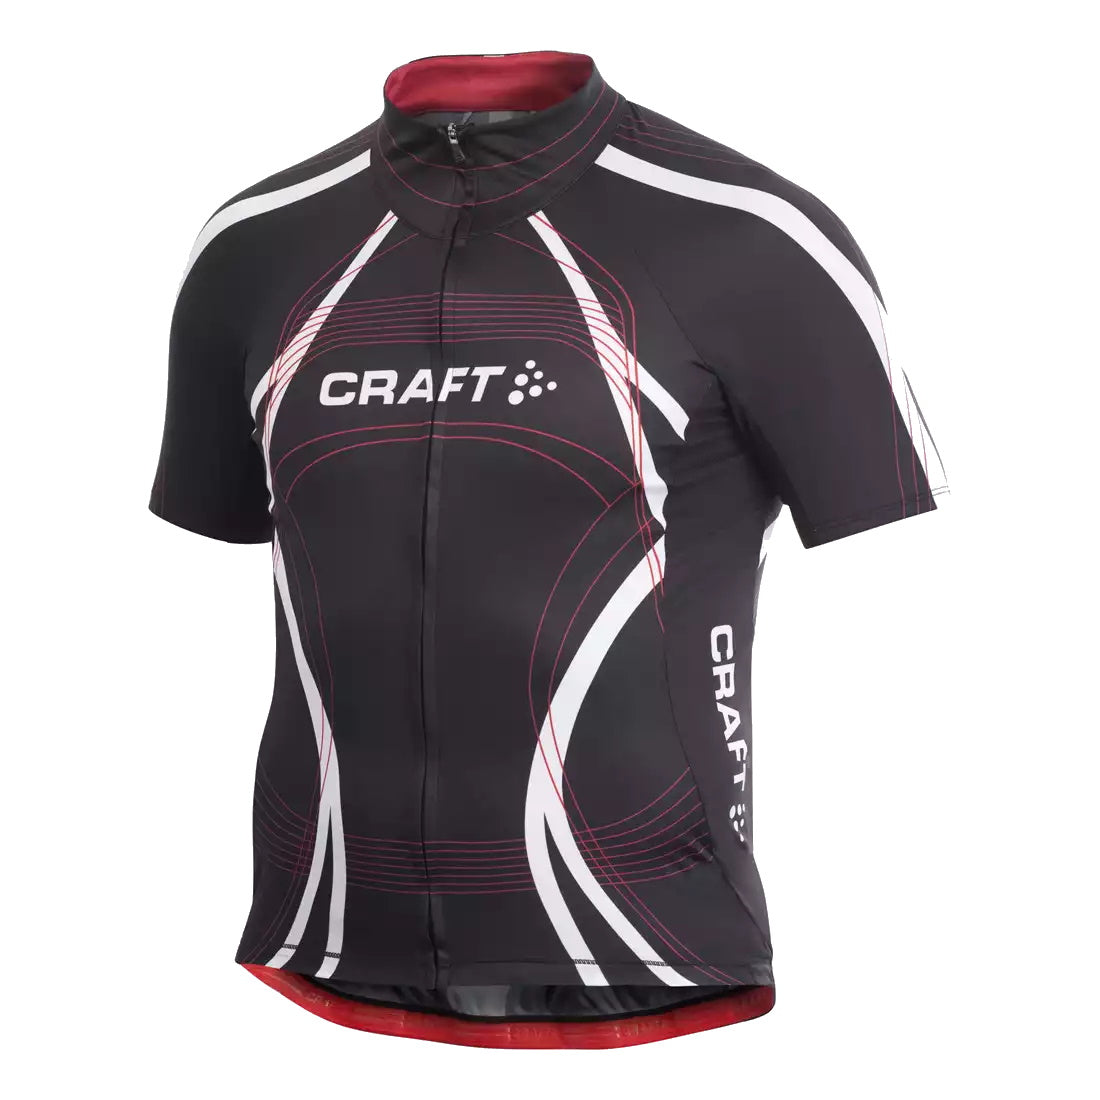 Craft Performance Tour fiets shirt zwart/rood